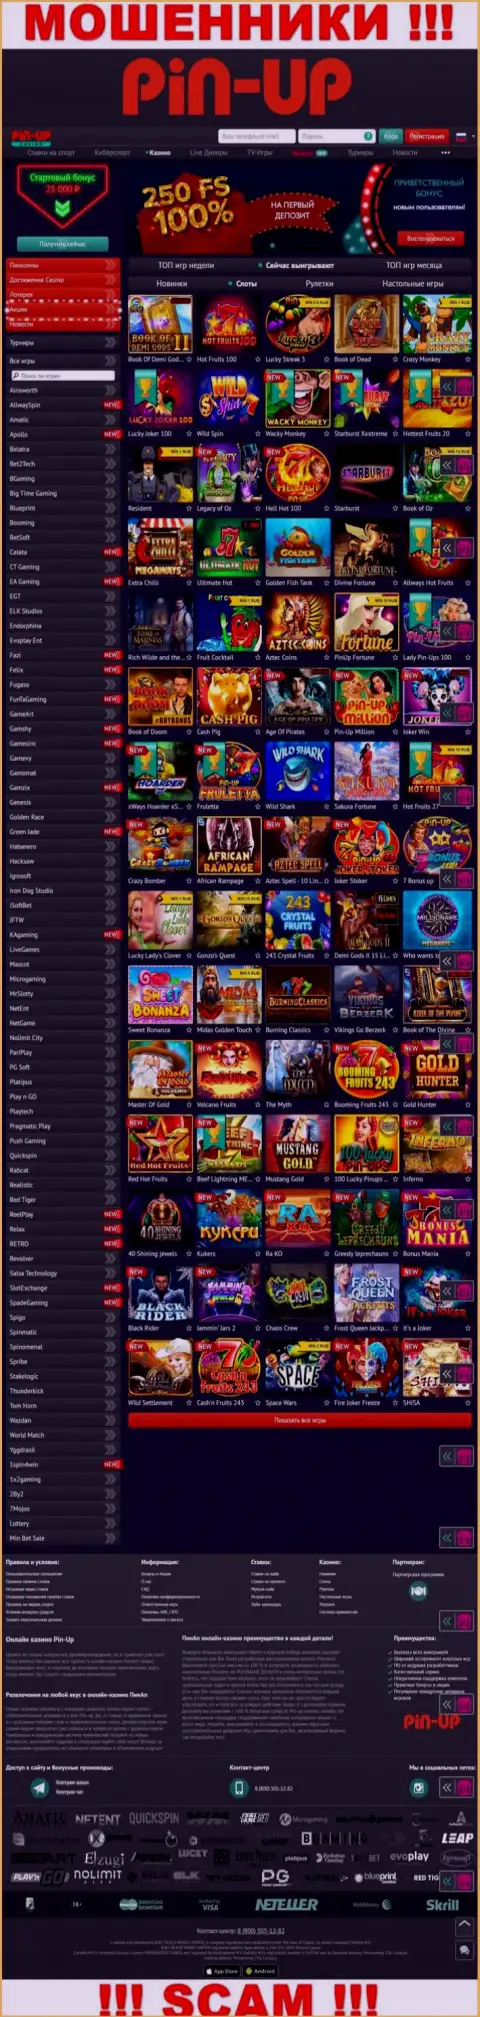 Pin-Up Casino - это официальный сайт интернет-мошенников PinUp Casino